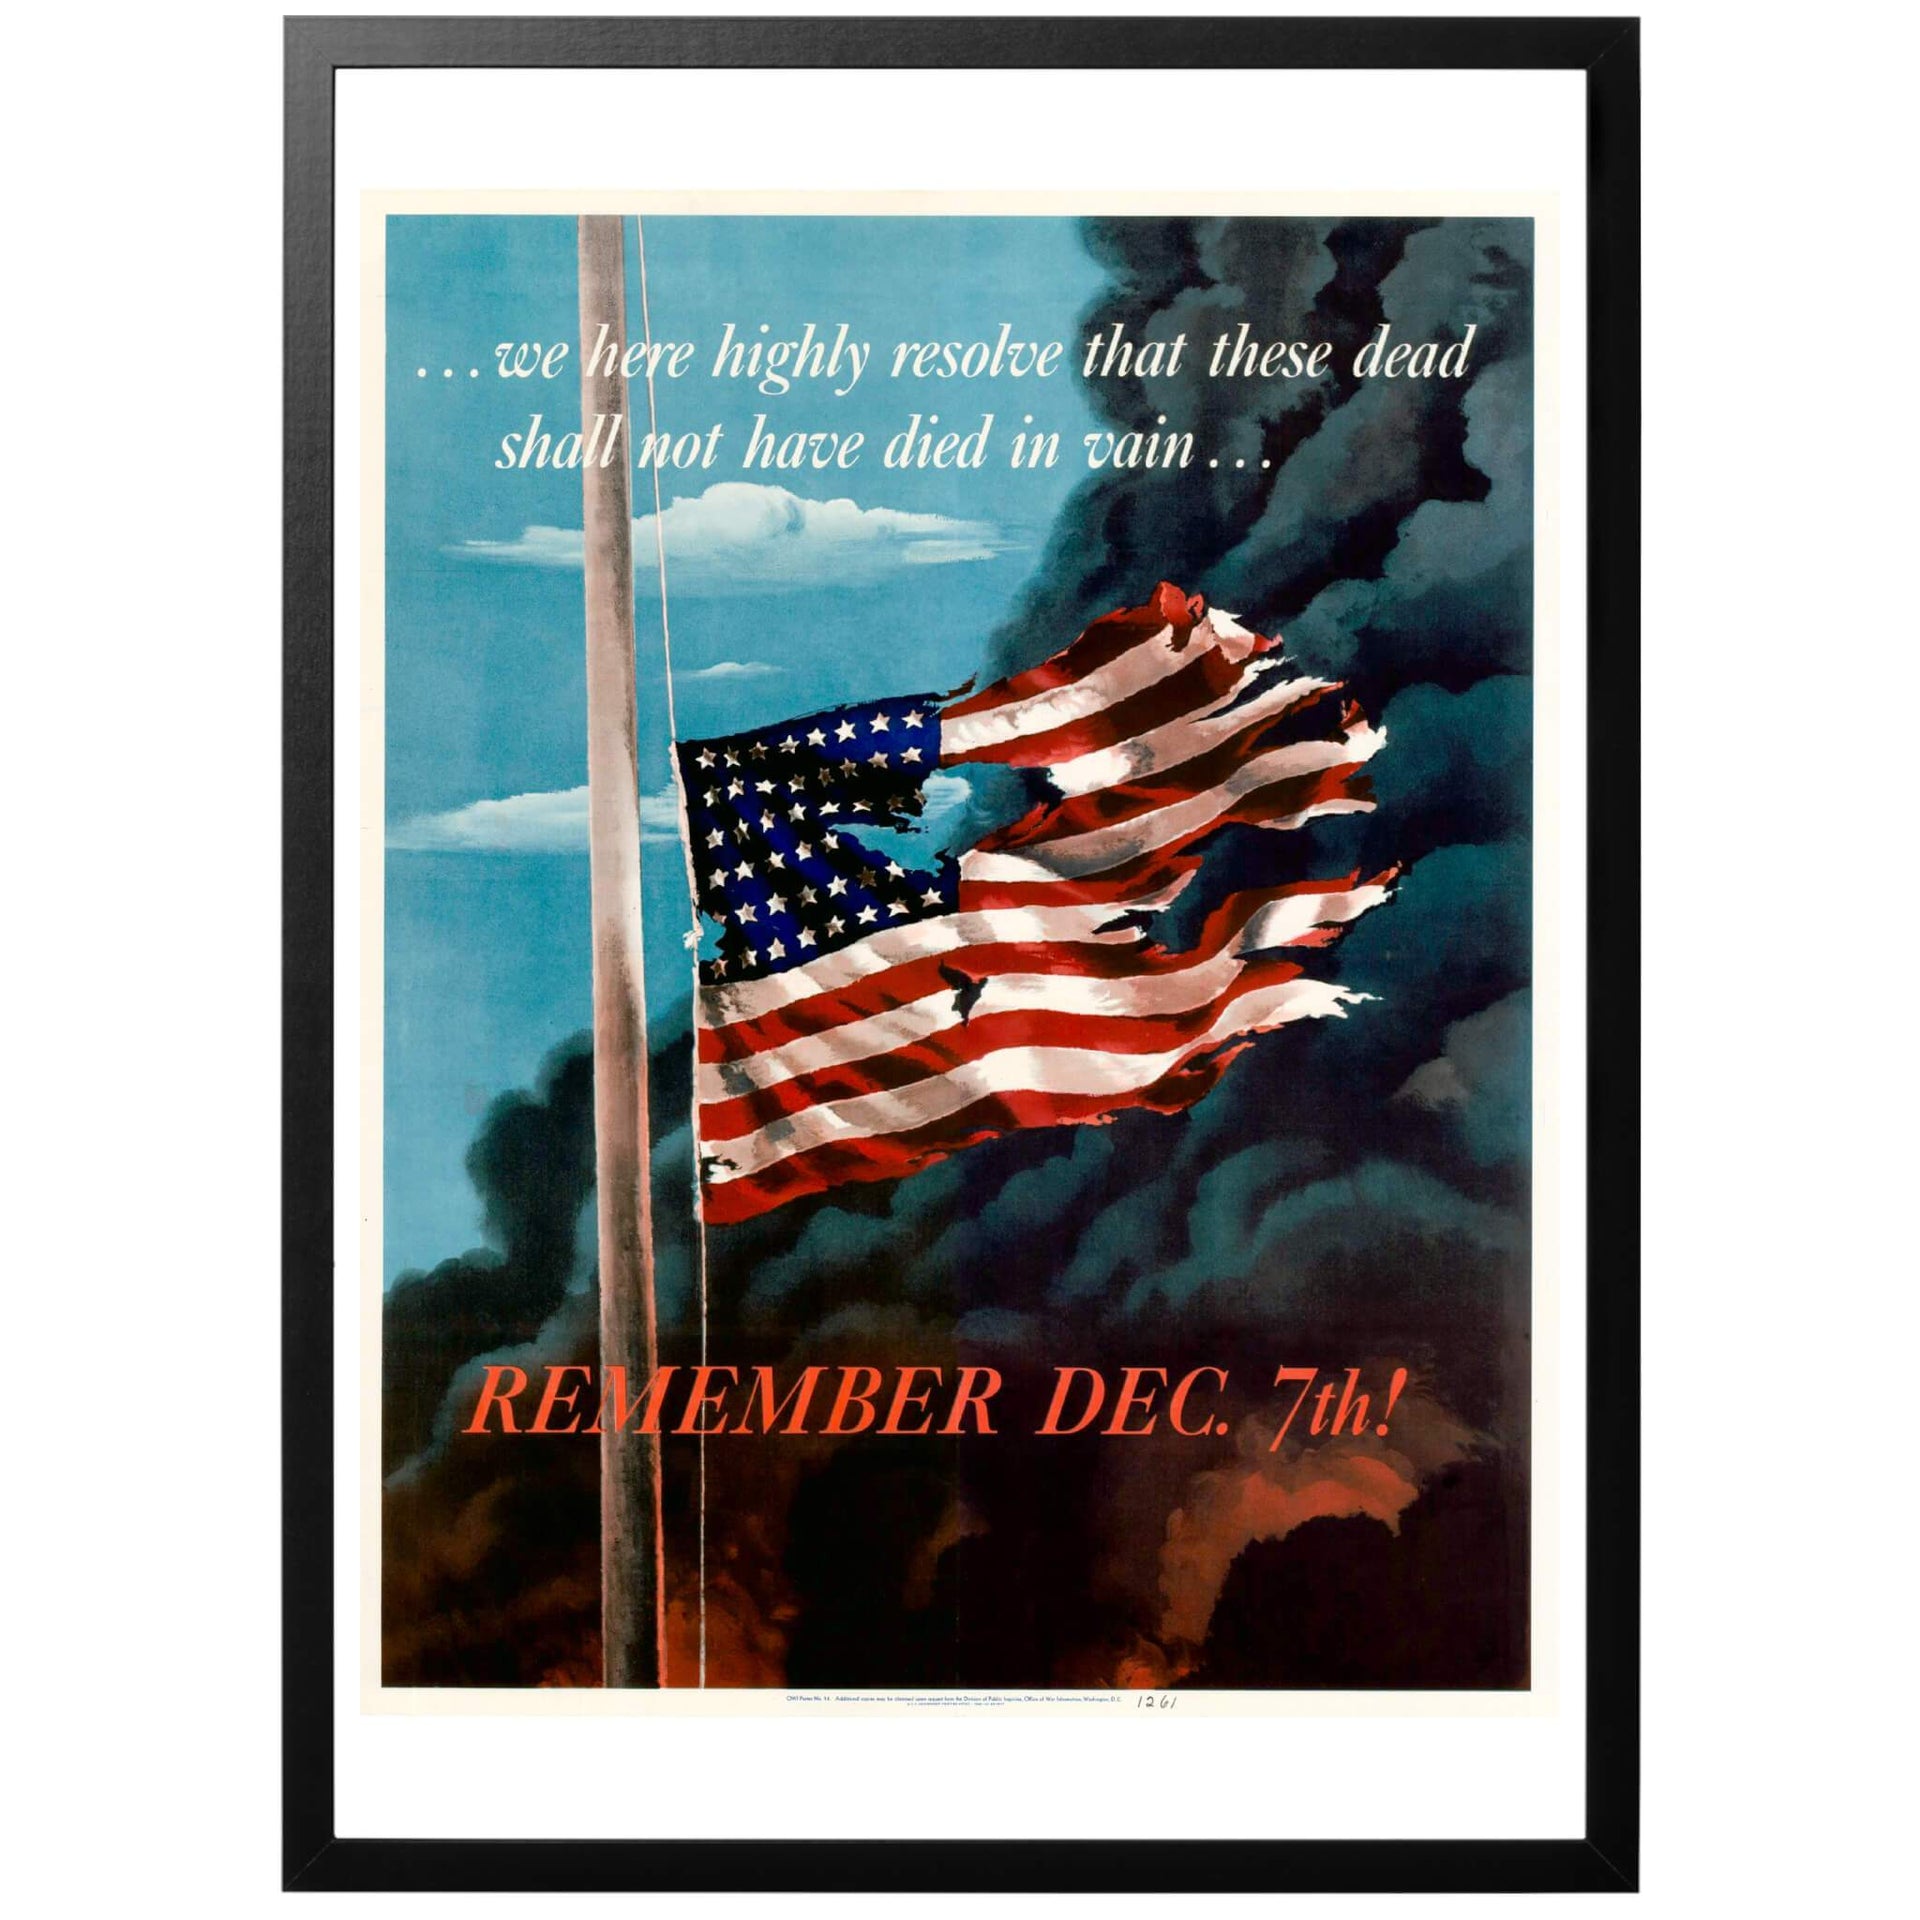 Denna affisch skapades under andra världskriget för "The Office of War Information" med syfte att uppmuntra amerikanare att öka produktionionen och mobiliseringen för krigsinsatsen. Det var den 7:e December, 1941 som Pearl Harbour attacken tog plats, någon som fortfarande fanns färskt i minnet för alla amerikanare. Citatet i affischen är taget från Abraham Lincolns tal vid Gettysburg.